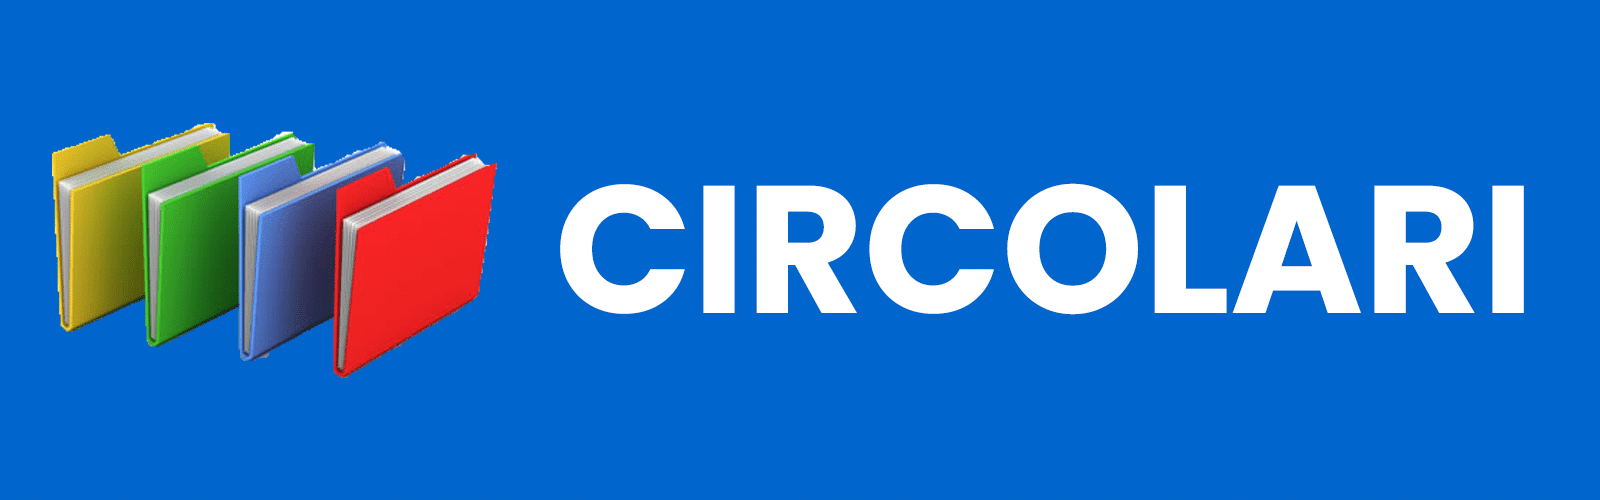 Banner Circolari per sito (Sfondo Blu)